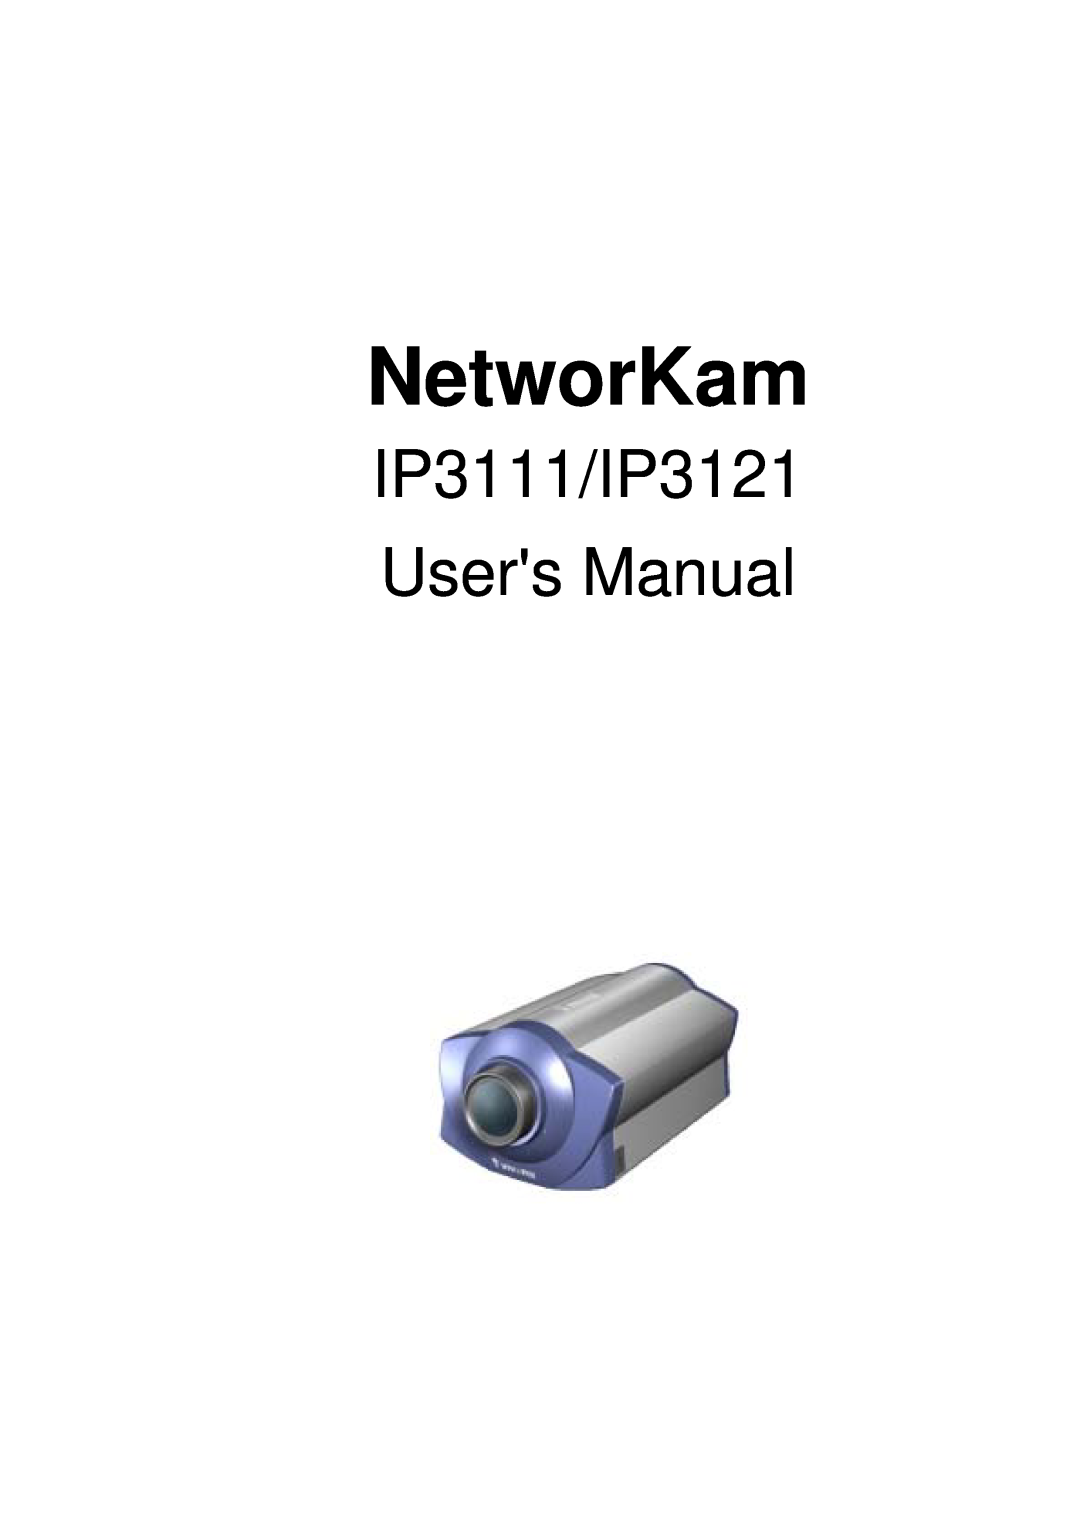 Vivotek user manual NetworKam, IP3111/IP3121 Users Manual 